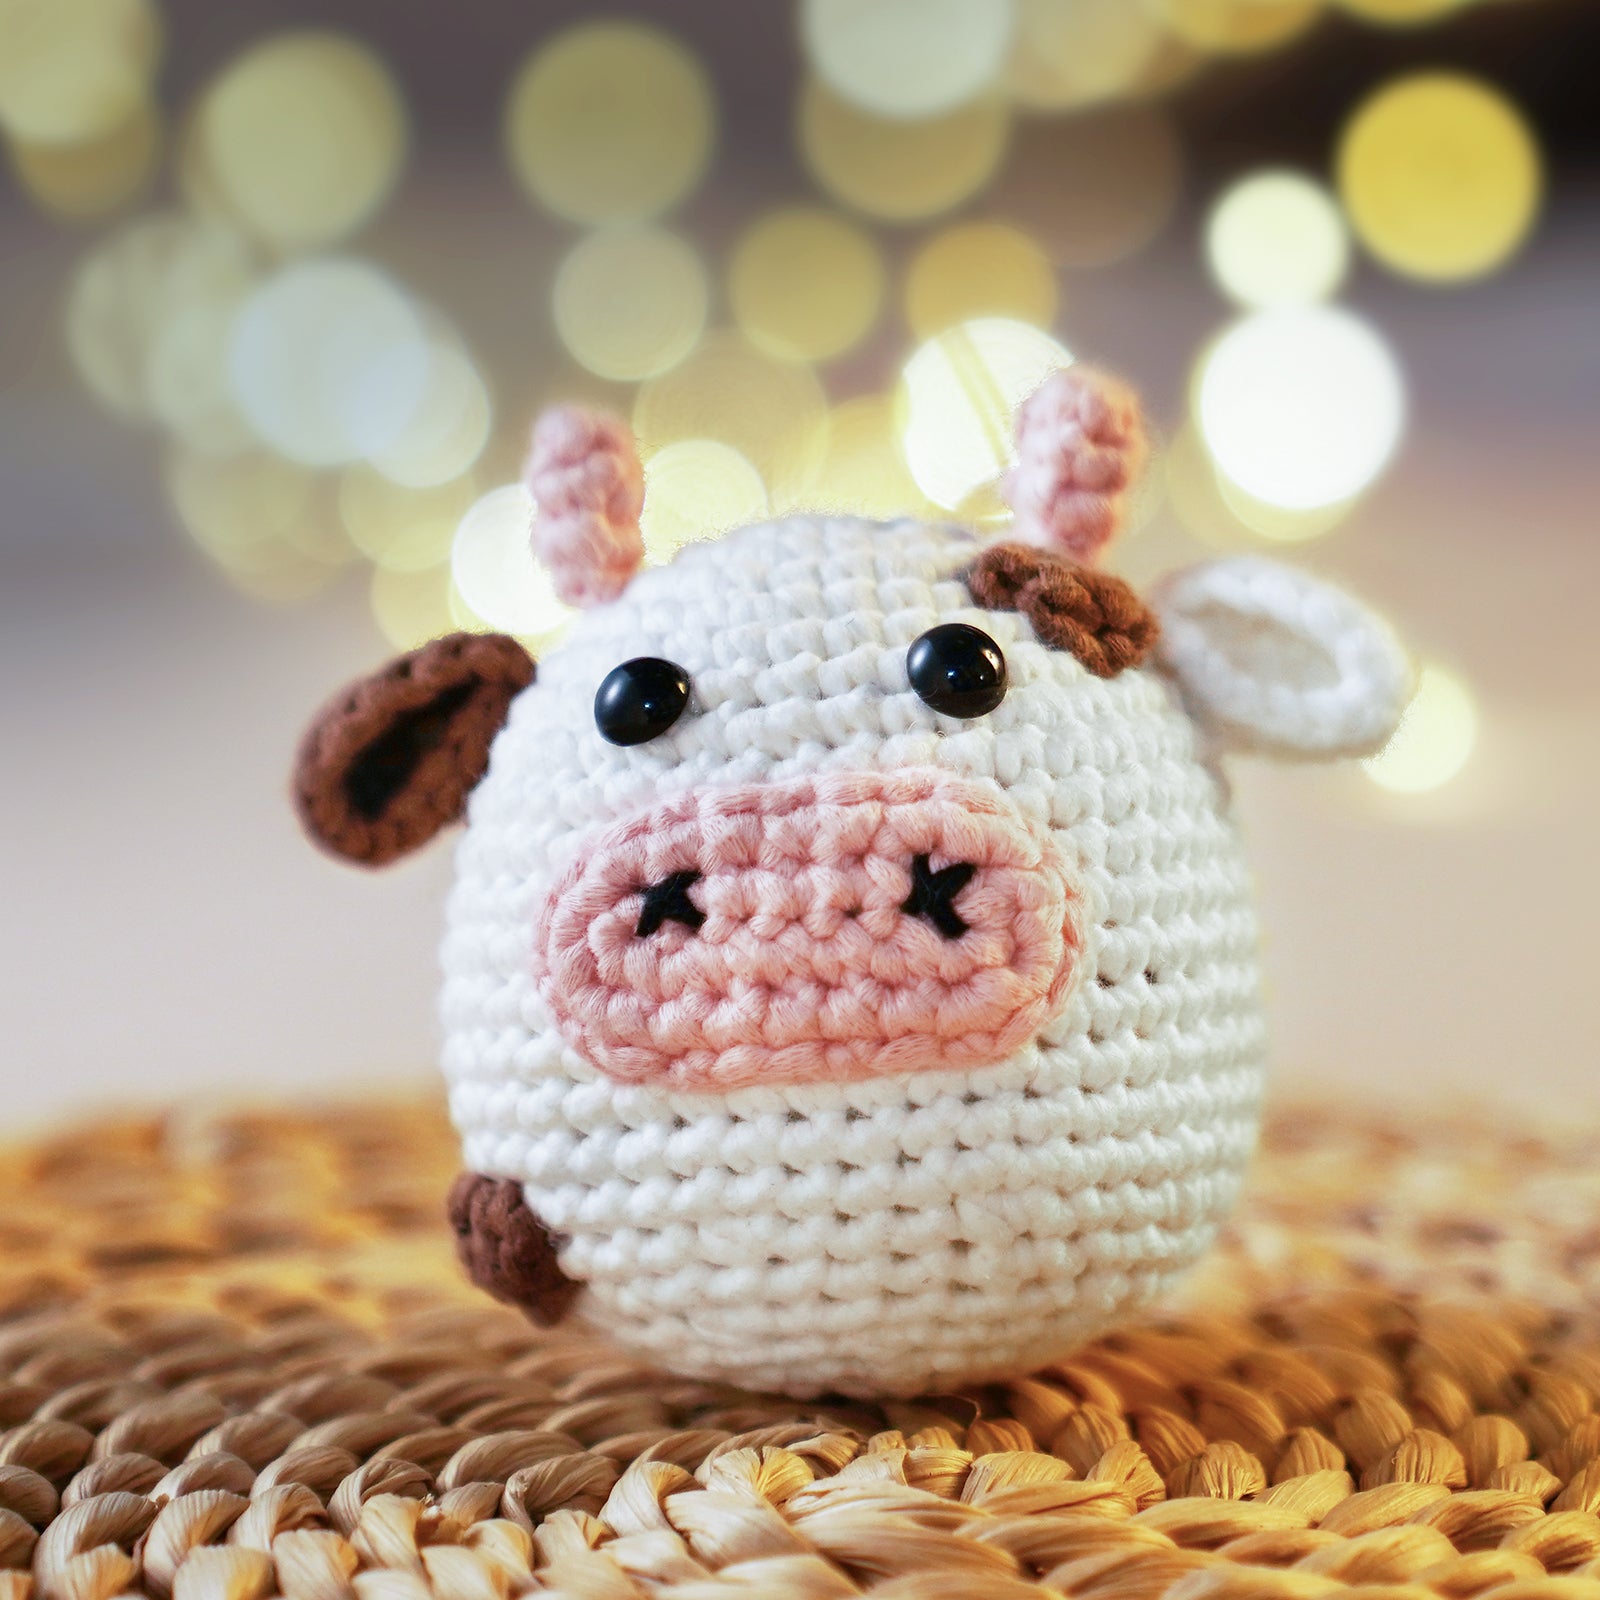 Cow Crochet Kit & Pattern, Beginner Crochet Kit